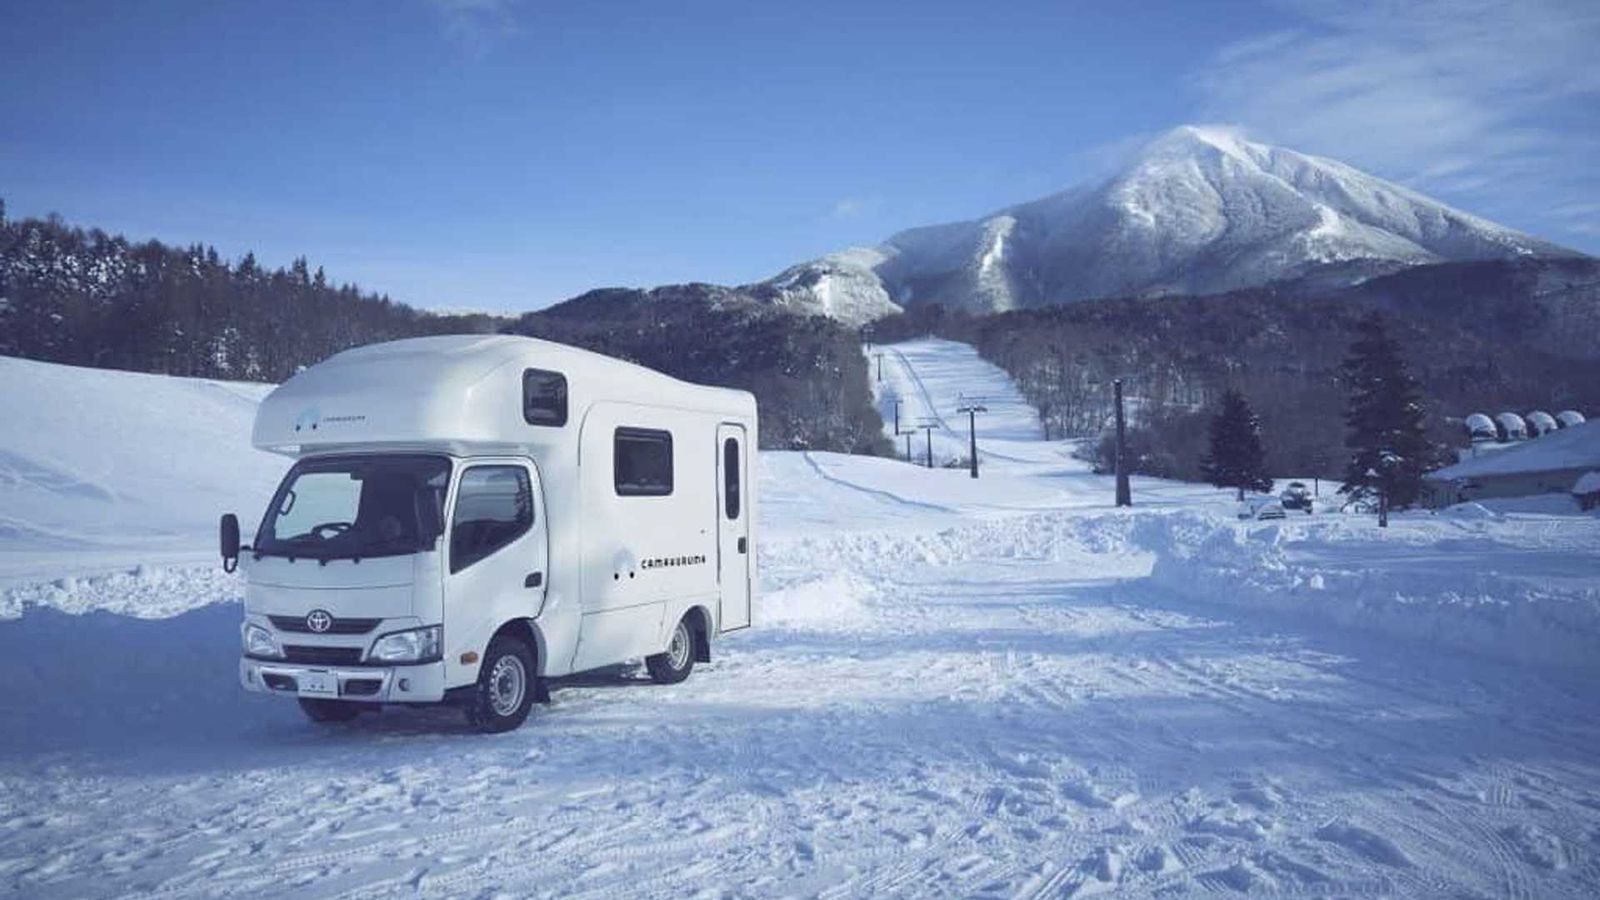 Το Hoshino Resort Alz Bandai χρησιμοποιεί το όχημα για να προωθήσει το πρόγραμμα ενοικίασης τροχόσπιτων για άτομα που θέλουν μια πιο υπαίθρια εμπειρία κατά τη διάρκεια του ταξιδιού τους για σκι.